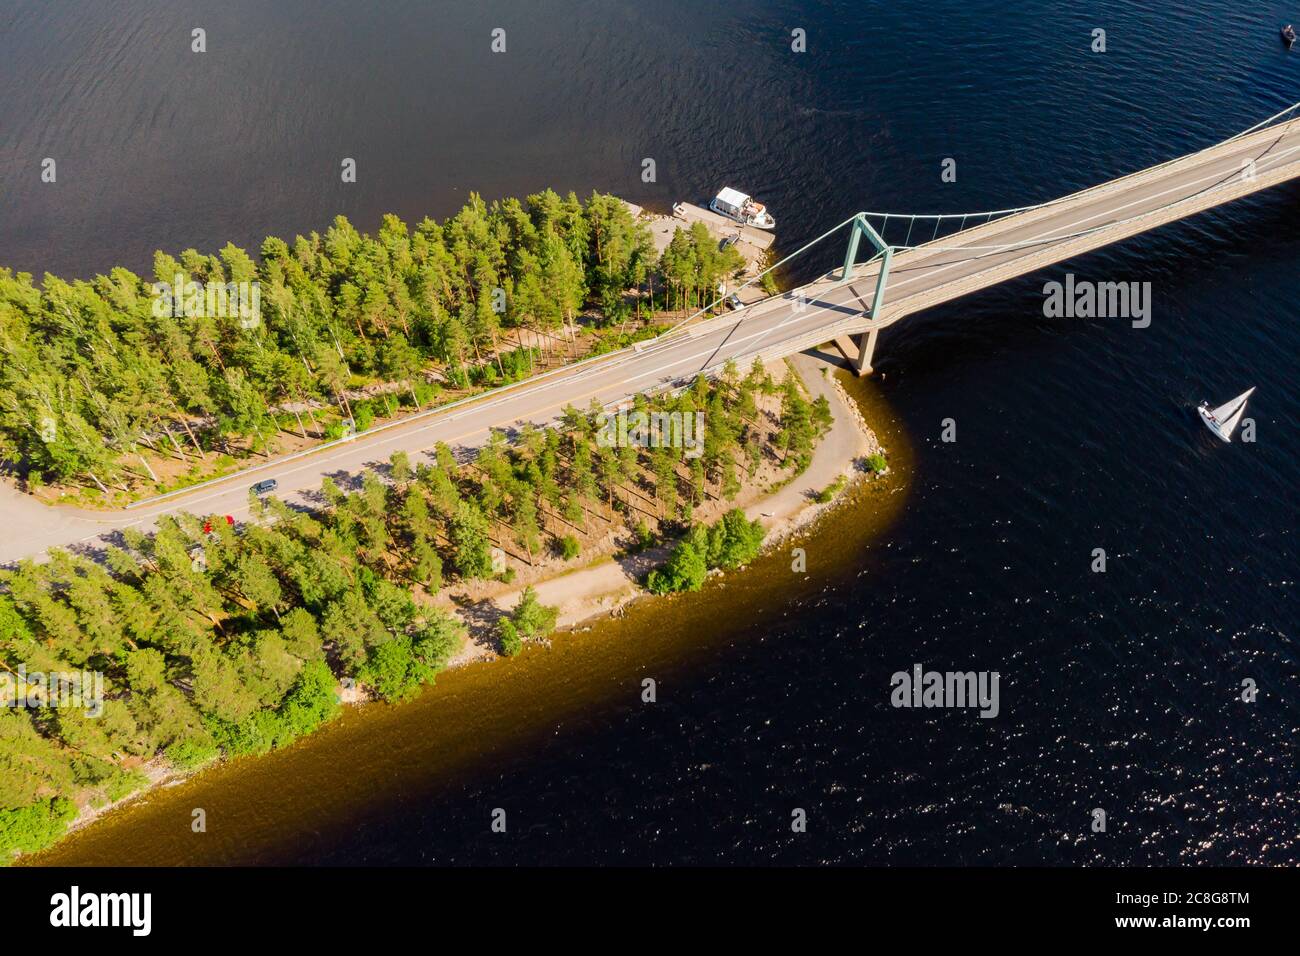 Luftaufnahme der Karisalmi-Brücke auf dem Pulkkilanharju Ridge am See Paijanne, Paijanne Nationalpark, Finnland. Stockfoto